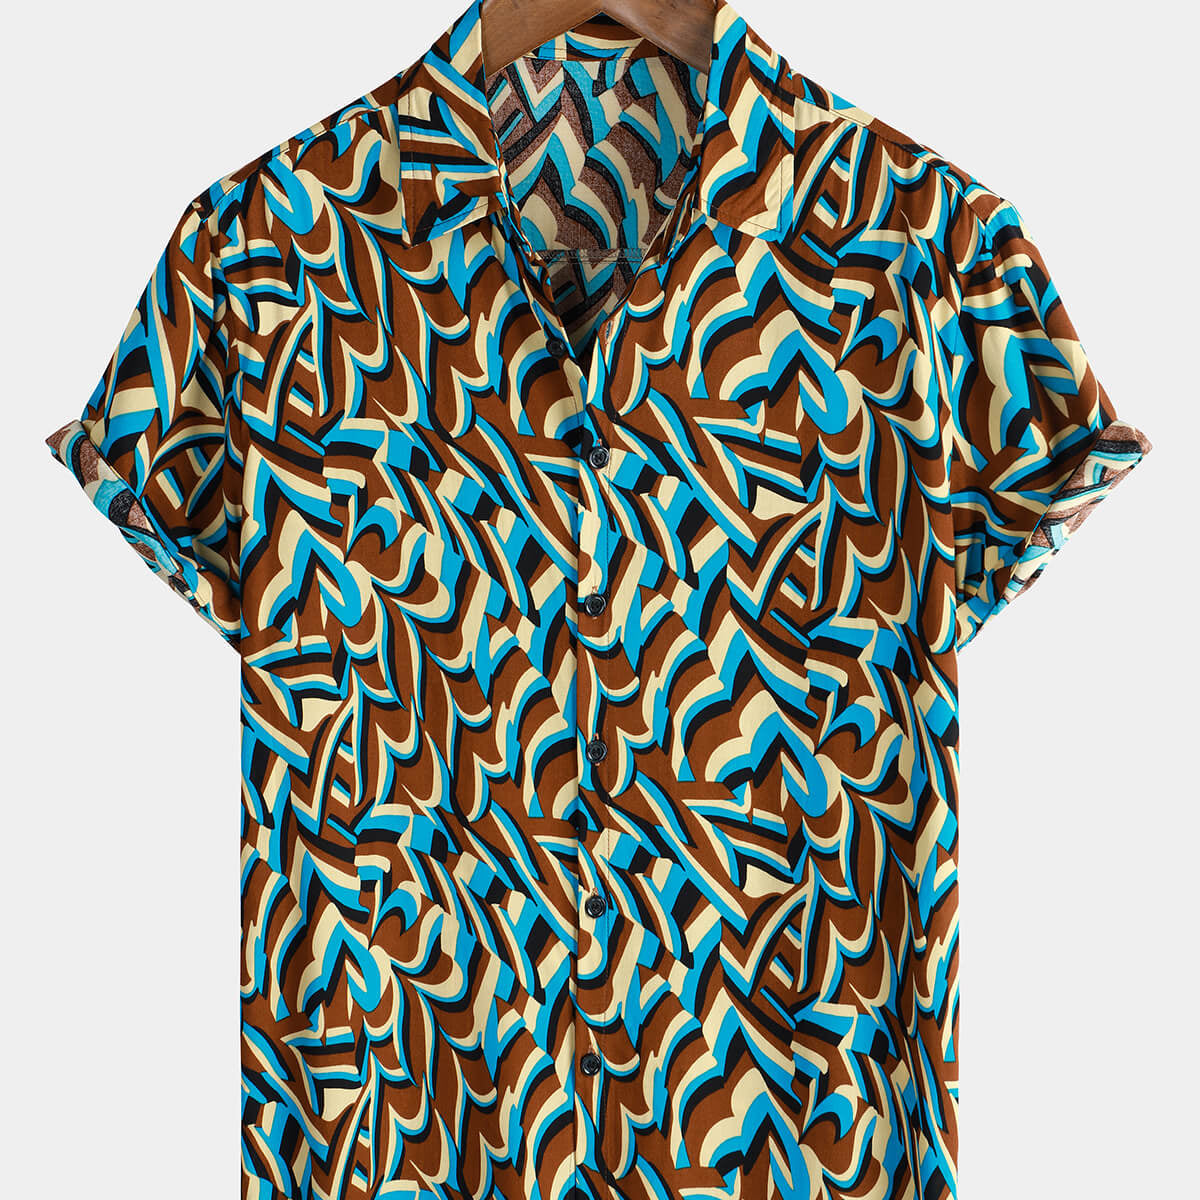 Men's Cool Button Up Geometric Summer Beach Short Sleeve Shirt